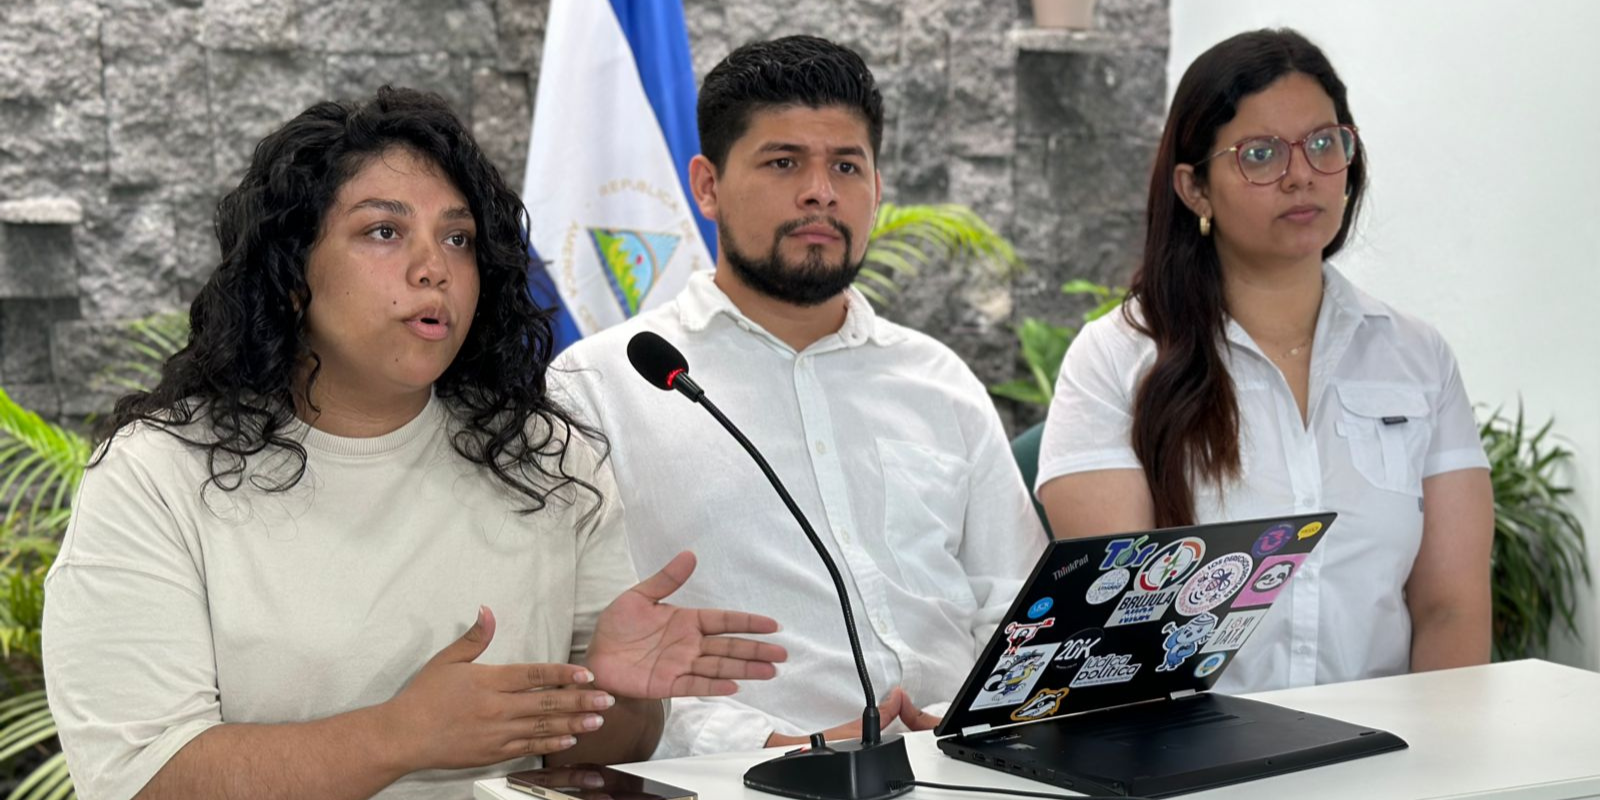 Los líderes estudiantiles Valeska Valle, Enrique Martínez y Yunova Acosta este viernes 11 de agosto durante un pronunciamiento en respaldo a la UCA.